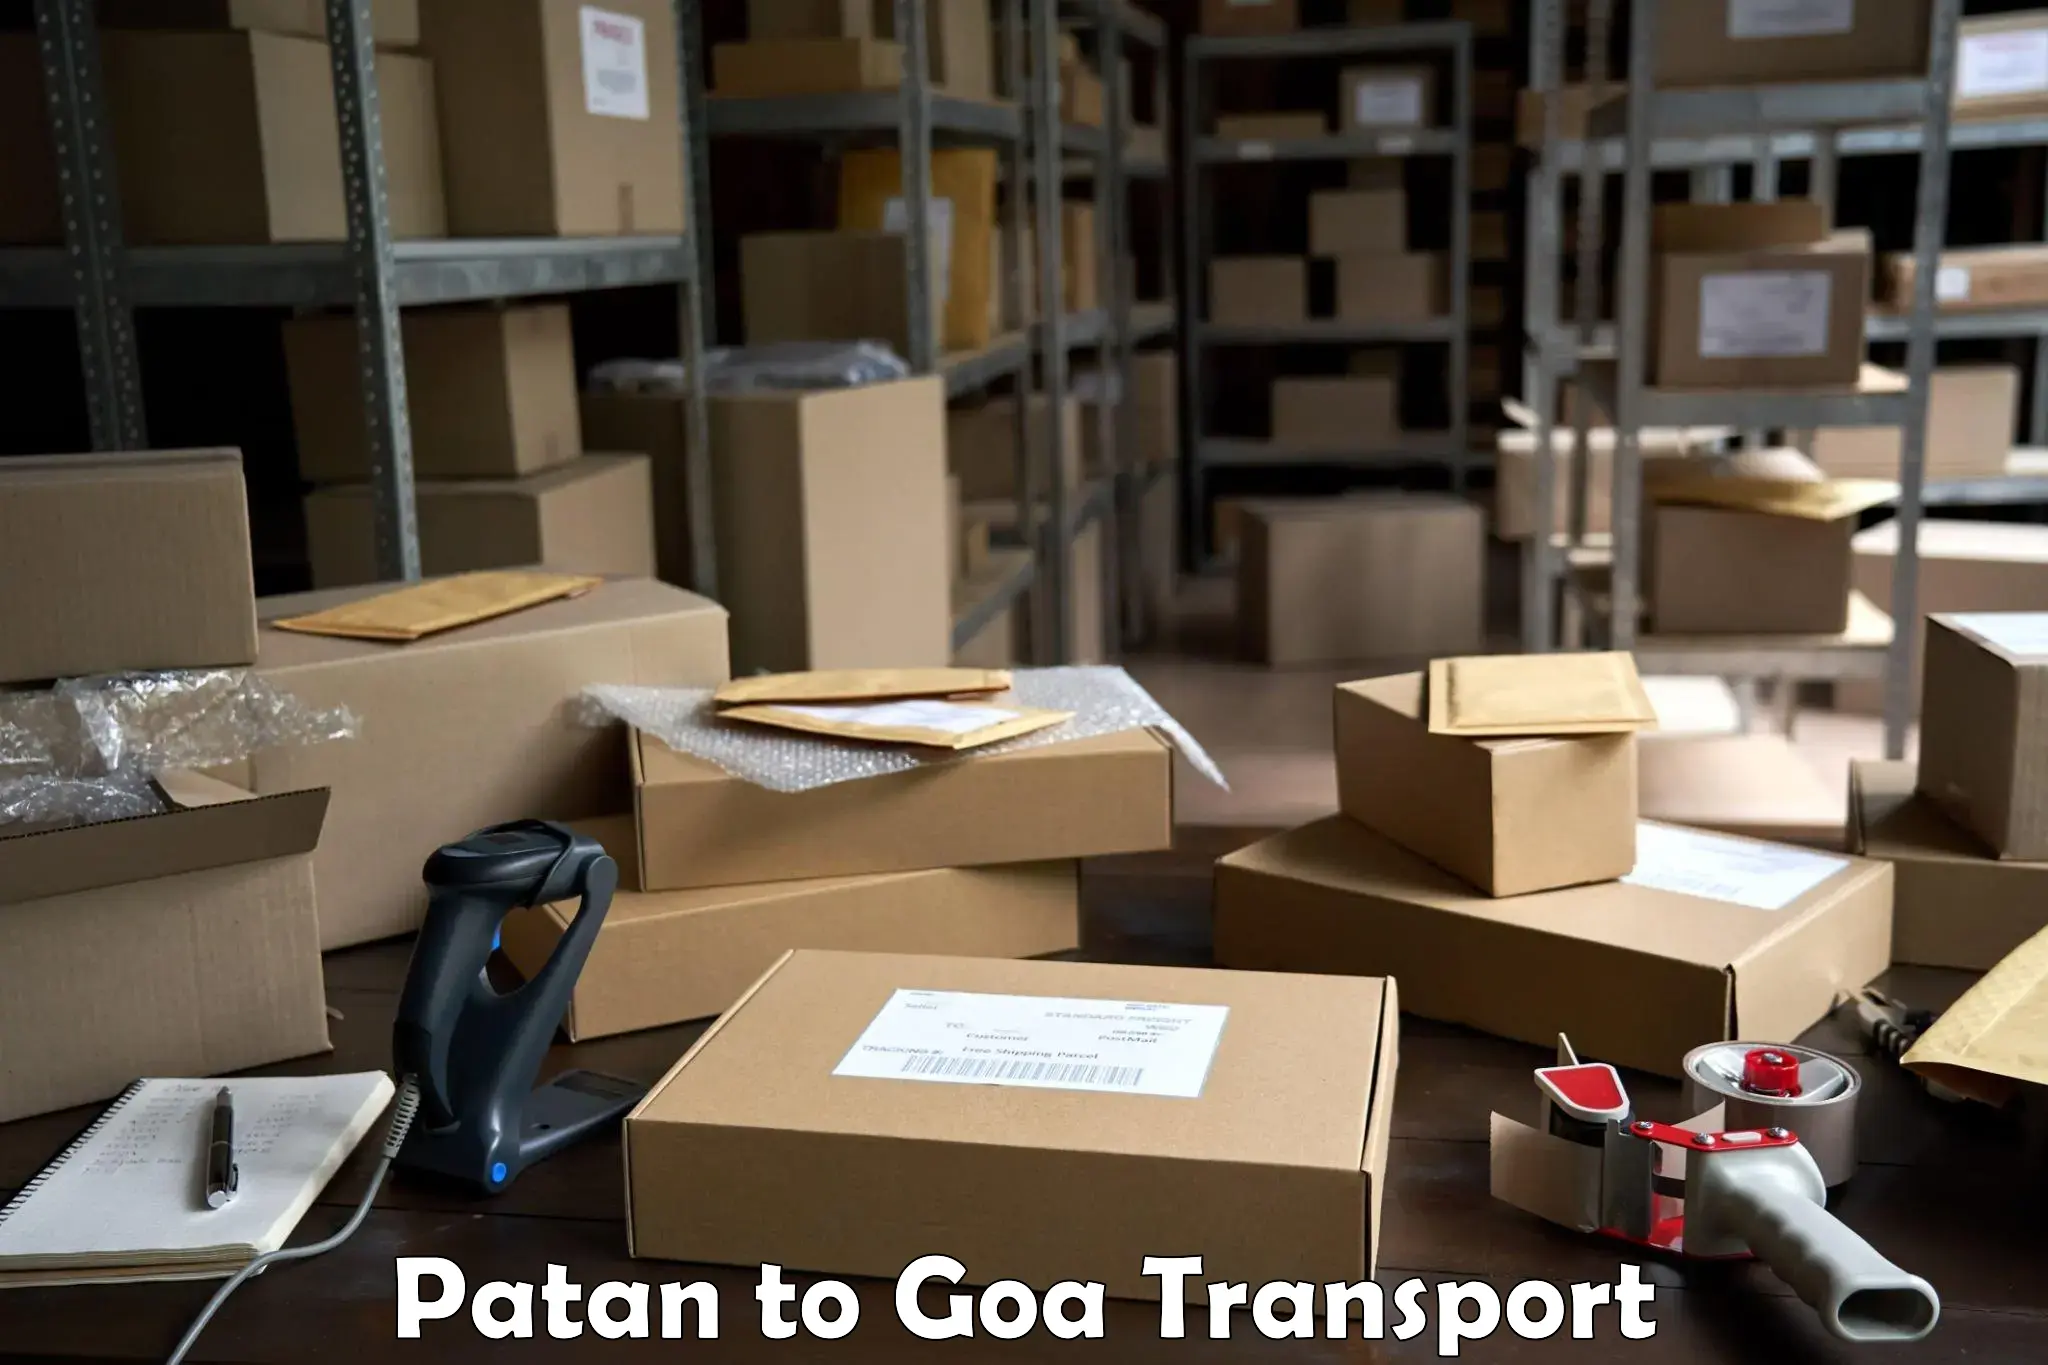 Daily transport service Patan to Panaji